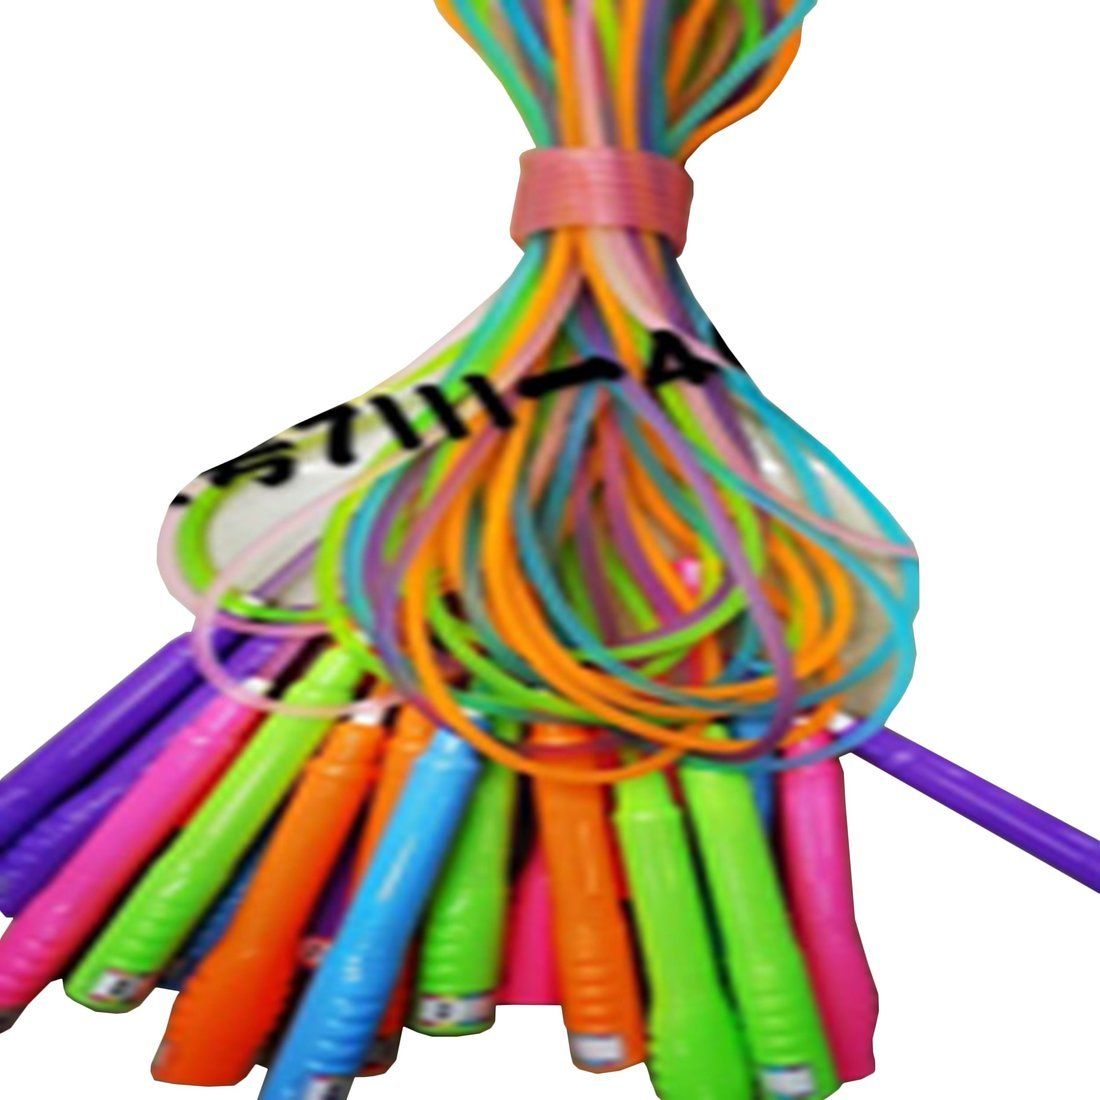 Скакалка, 2.5м, веревка пластик, ручки разноцветный полпрозрачный пластик, 4-5 цветов микс